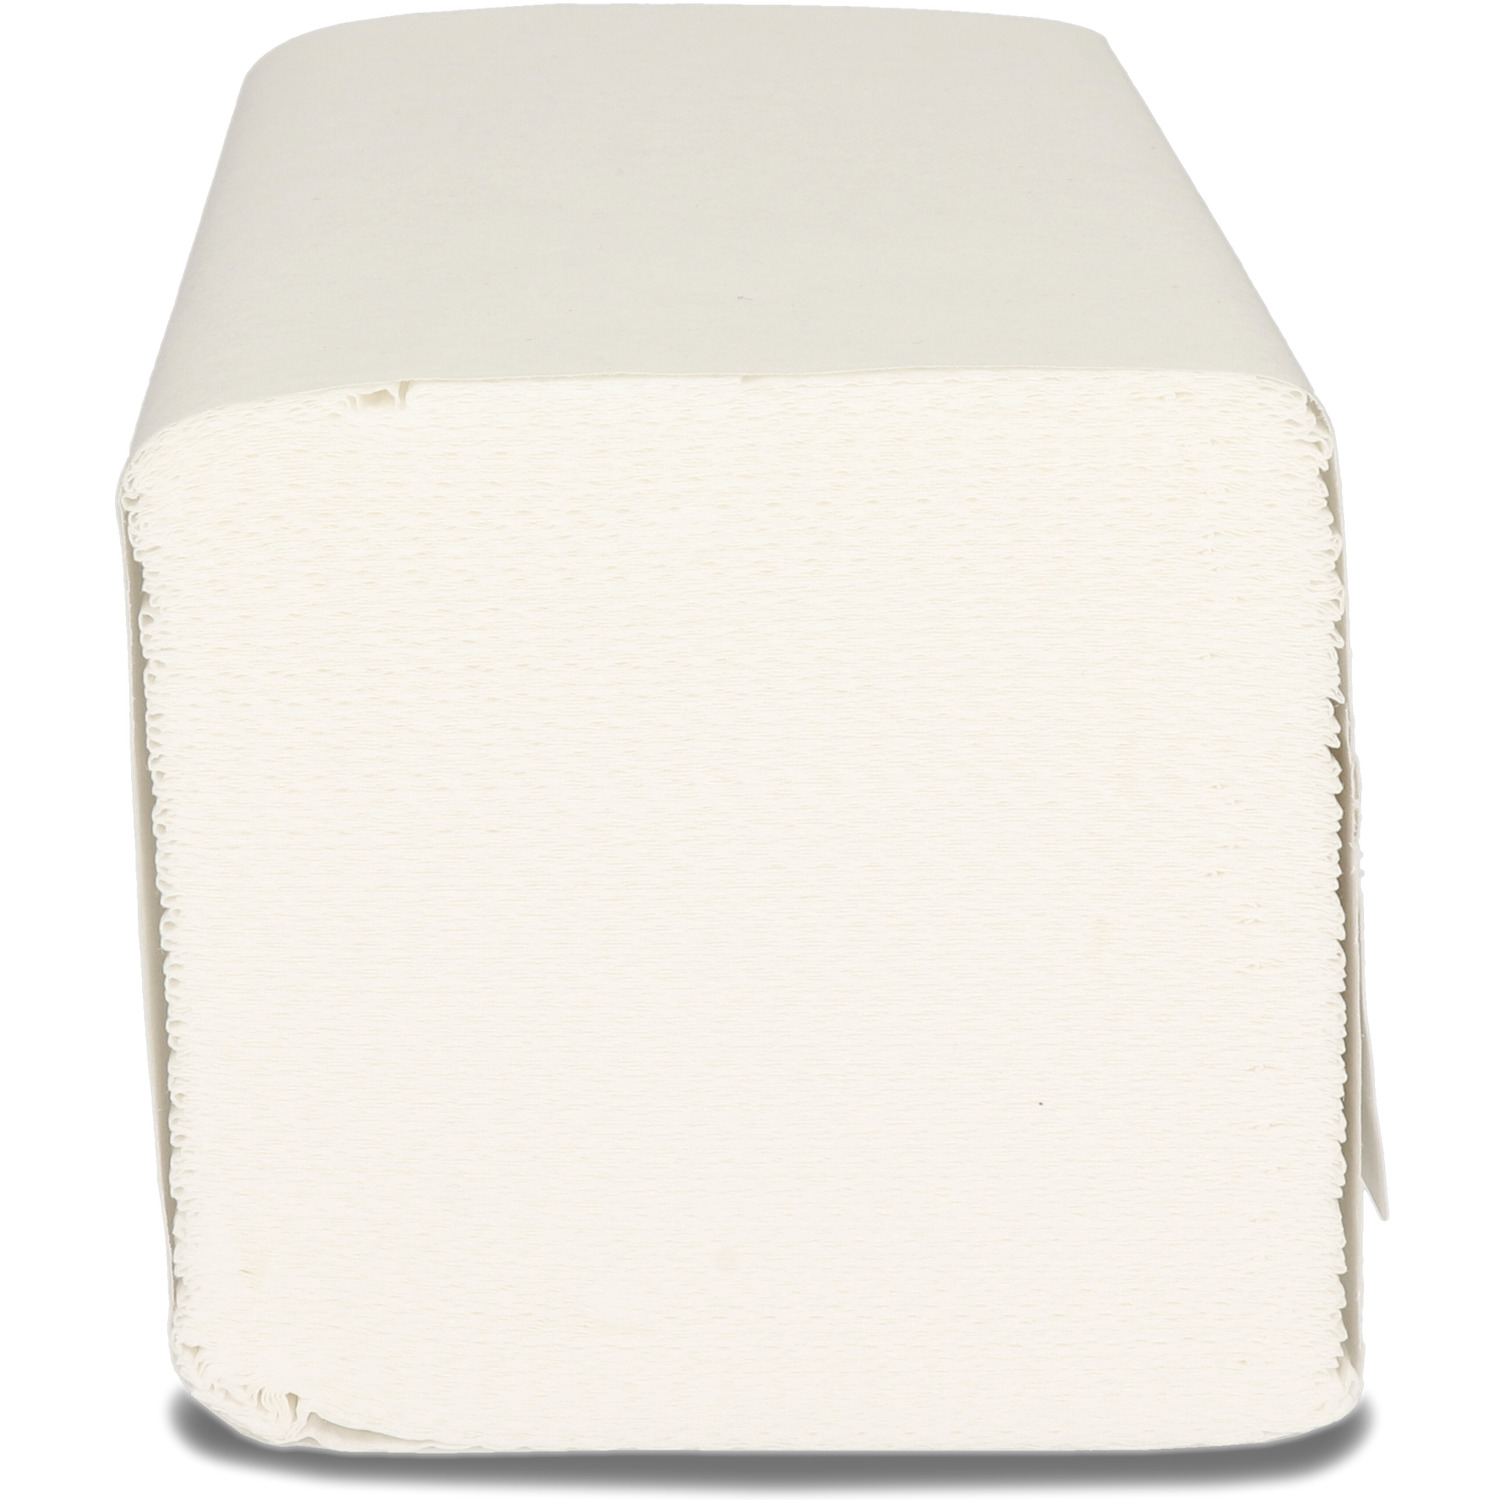 Ręcznik Z-Z V-FOLD biały 210x250mm 2w celuloza NEXXT 3000 składek 34g/m2 CH-ZZPNEC102B3000, re 0066020